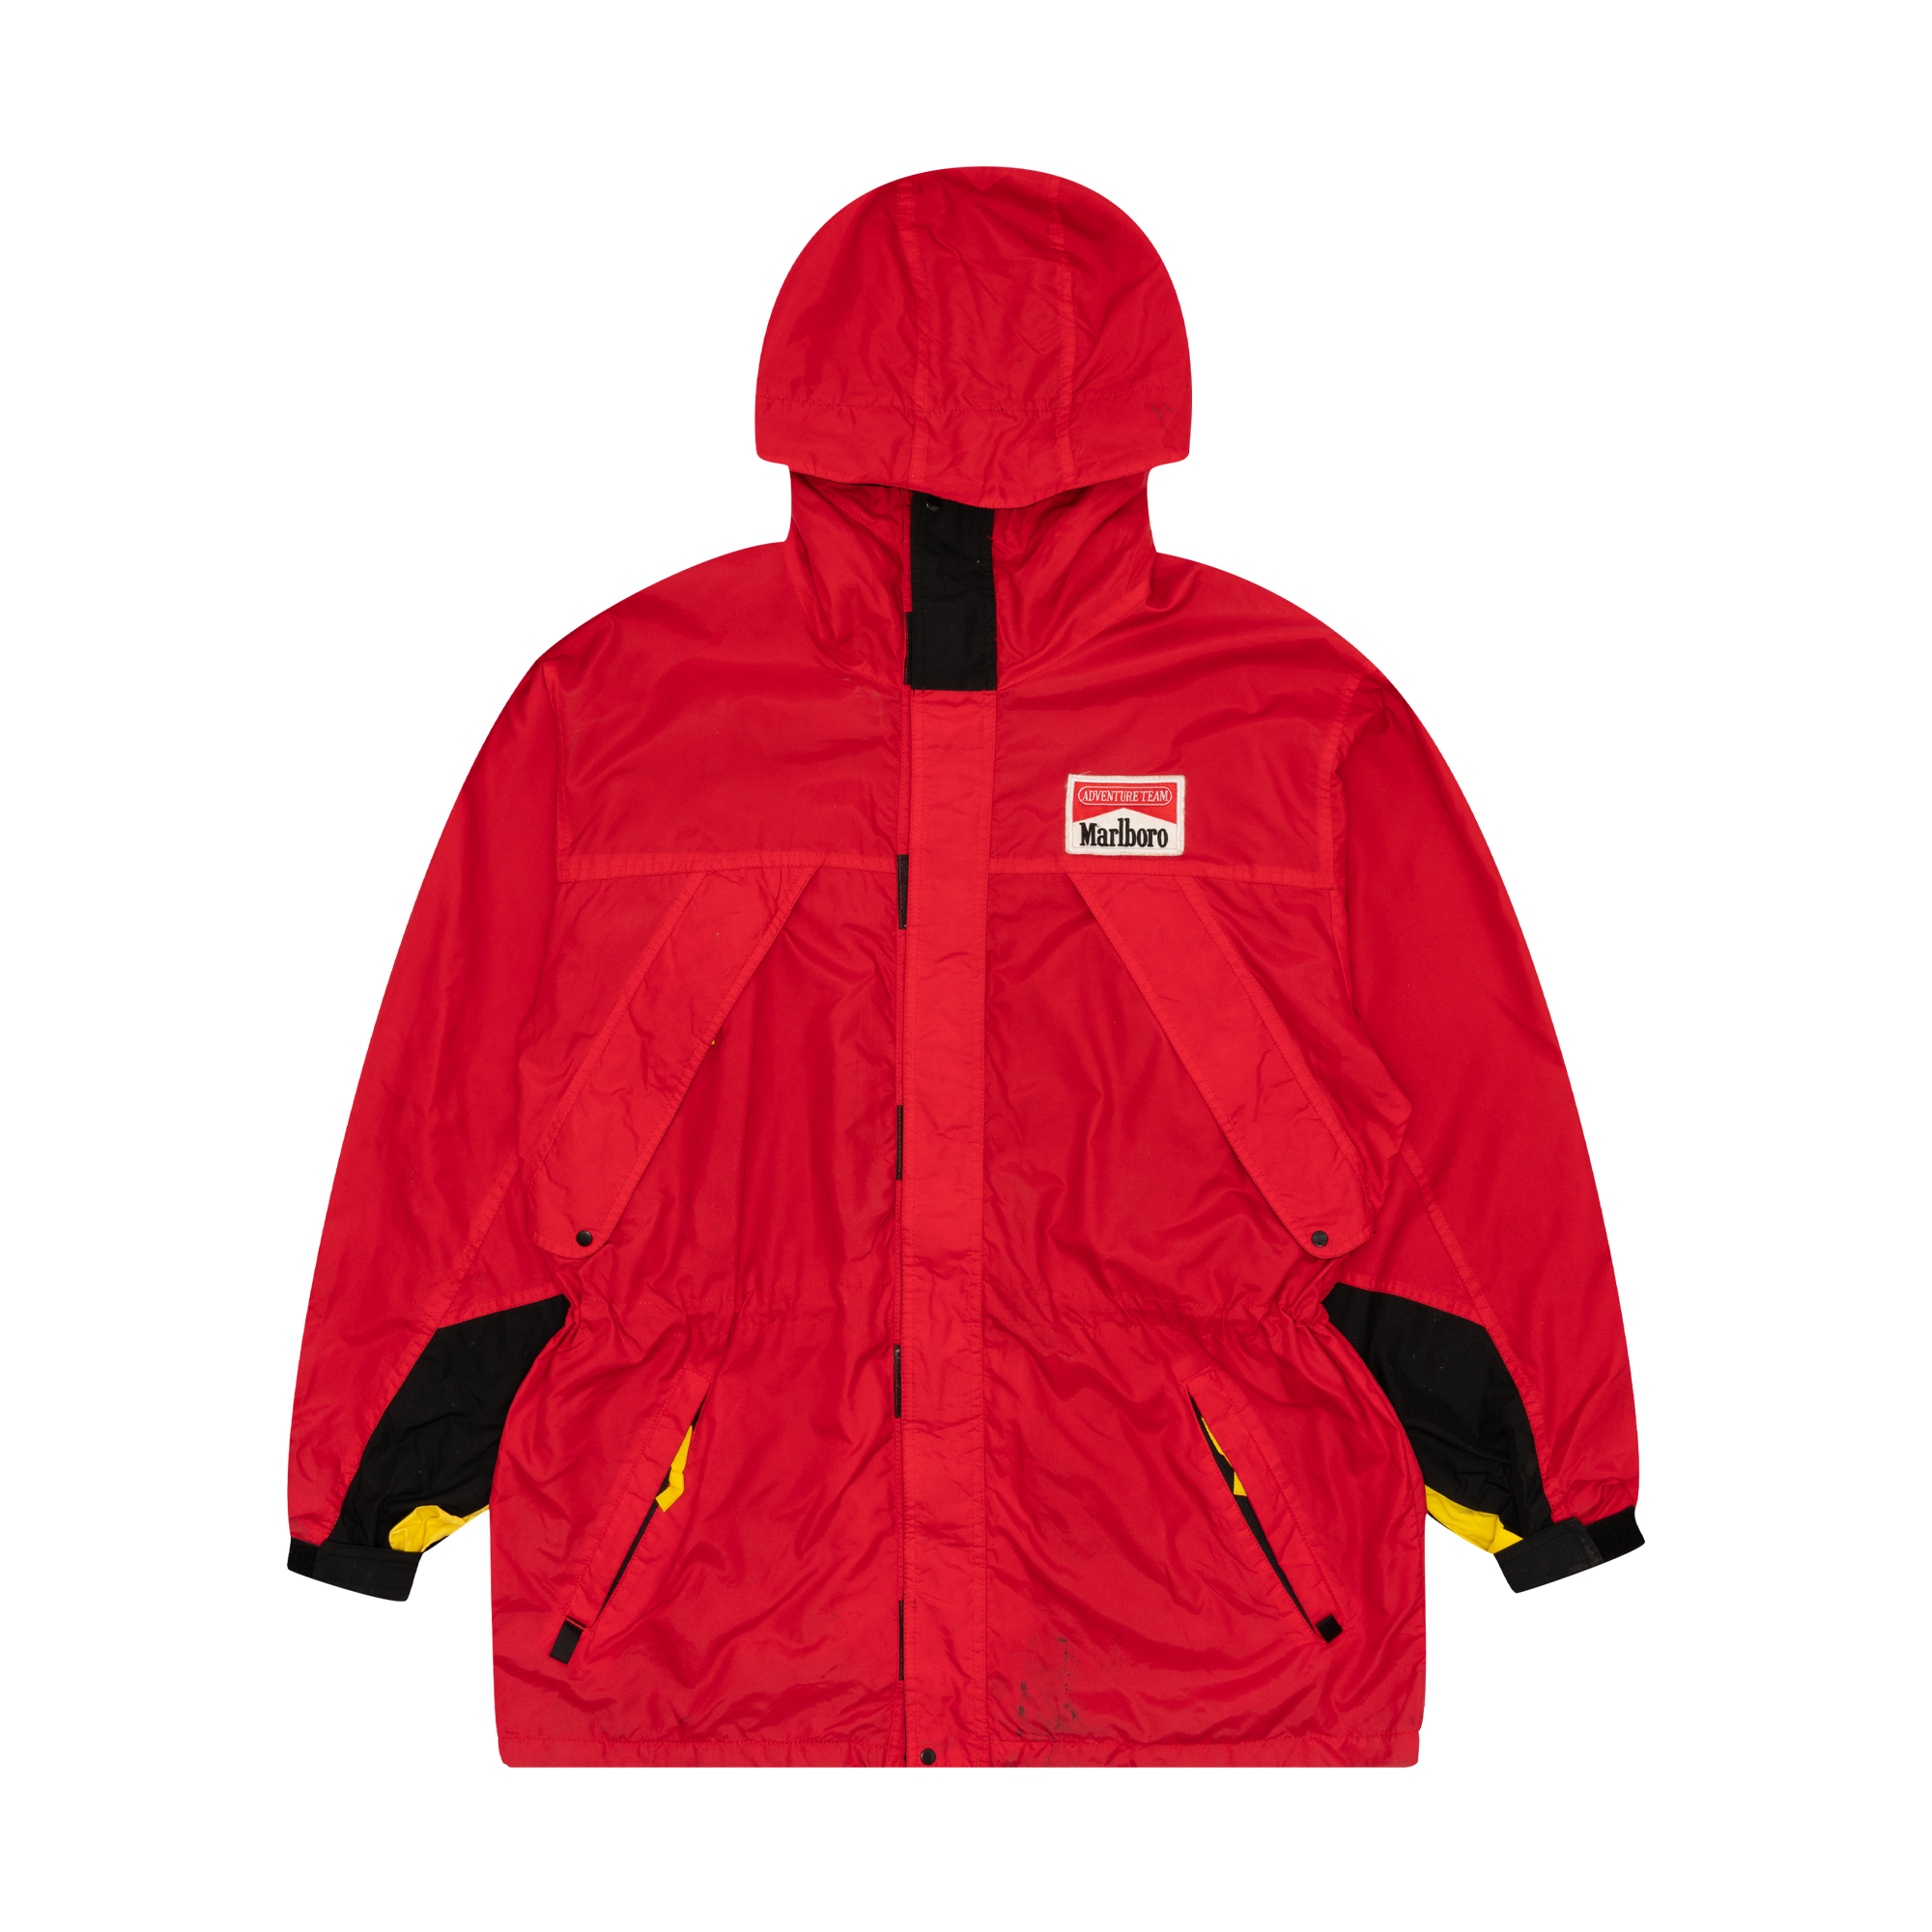 Marlboro Cigarettes "Adventure Team" Ski Jacket Red-PLUS